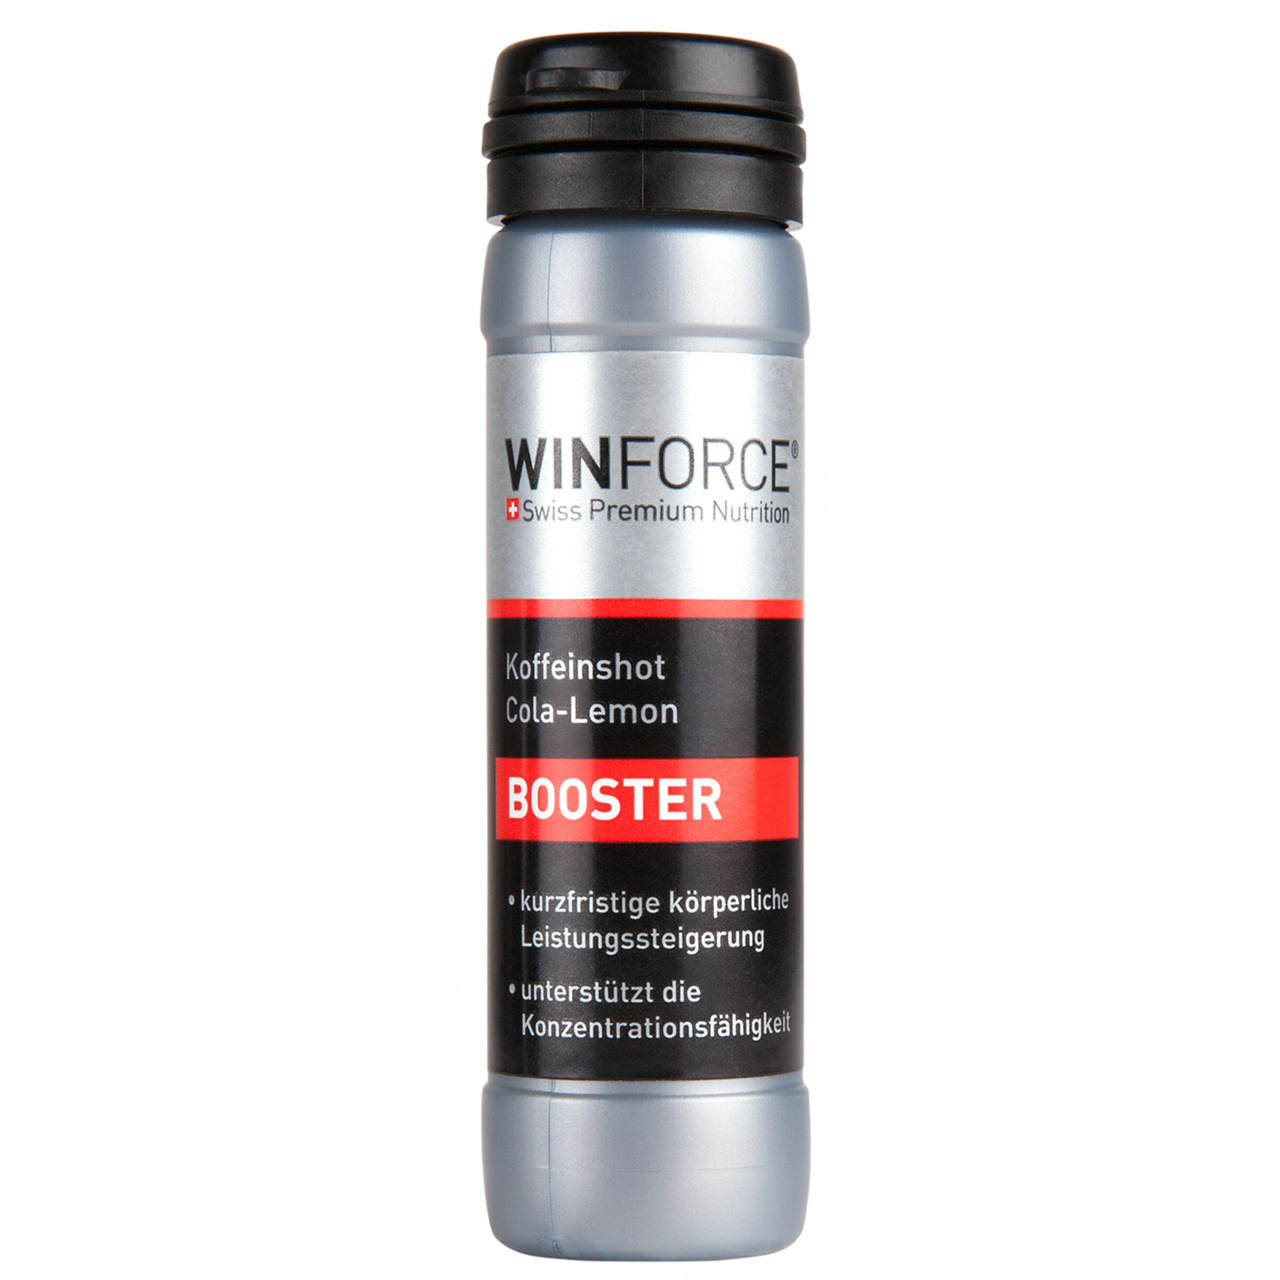 Winforce booster